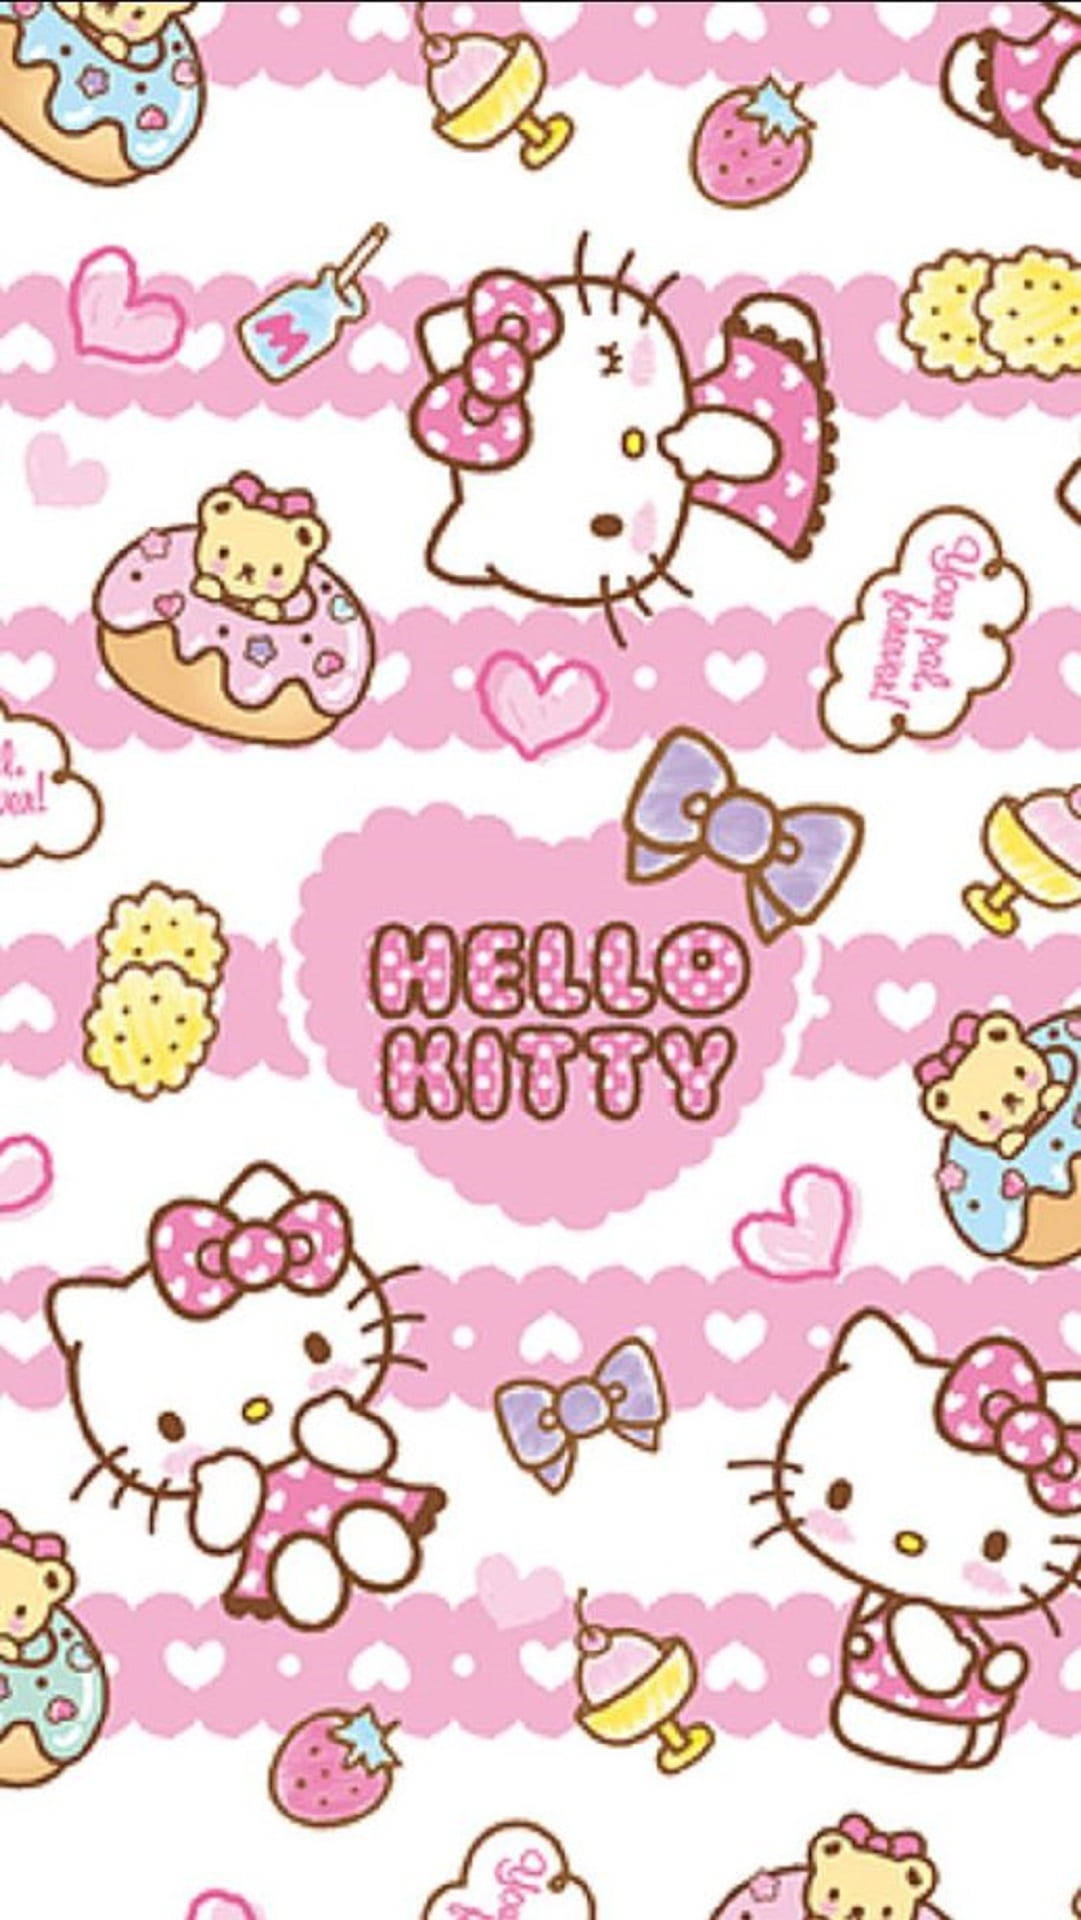 Fundode Tela Da Hello Kitty Rosa Com Desenho De Alimentos. Papel de Parede